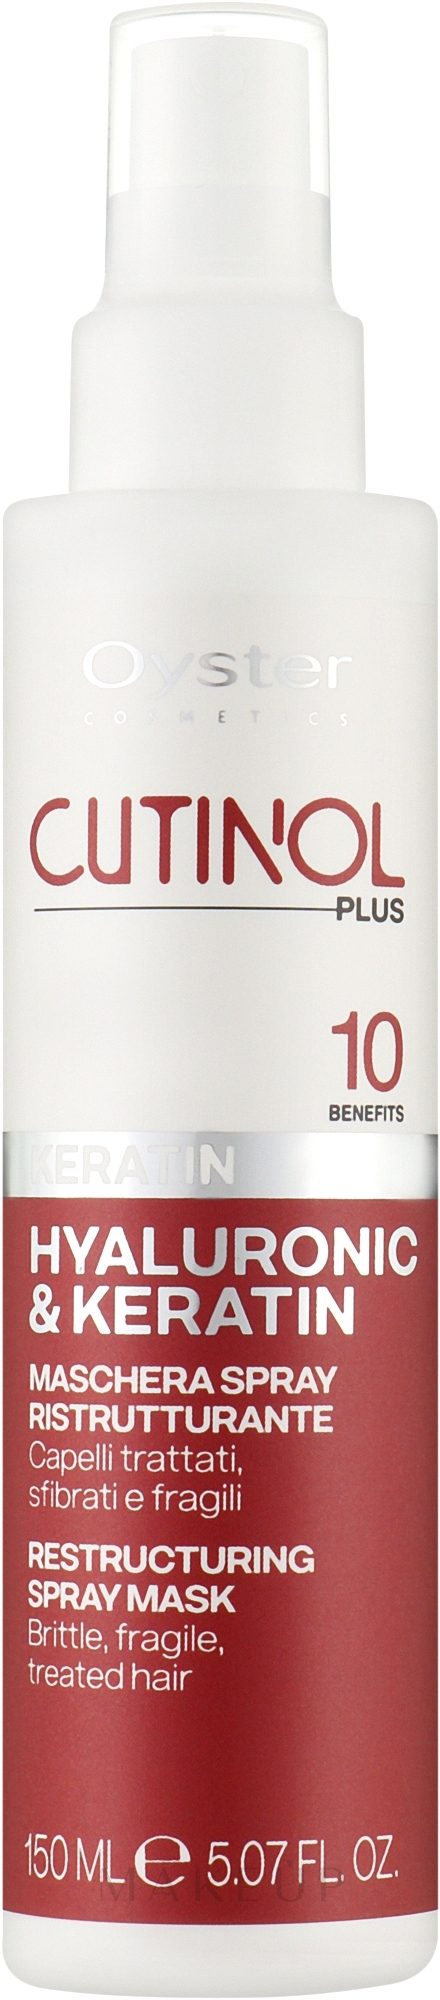 Spray-Maske für sprödes und schwaches Haar - Oyster Cutinol Plus All in One Keratin Spray Mask — Bild 150 ml